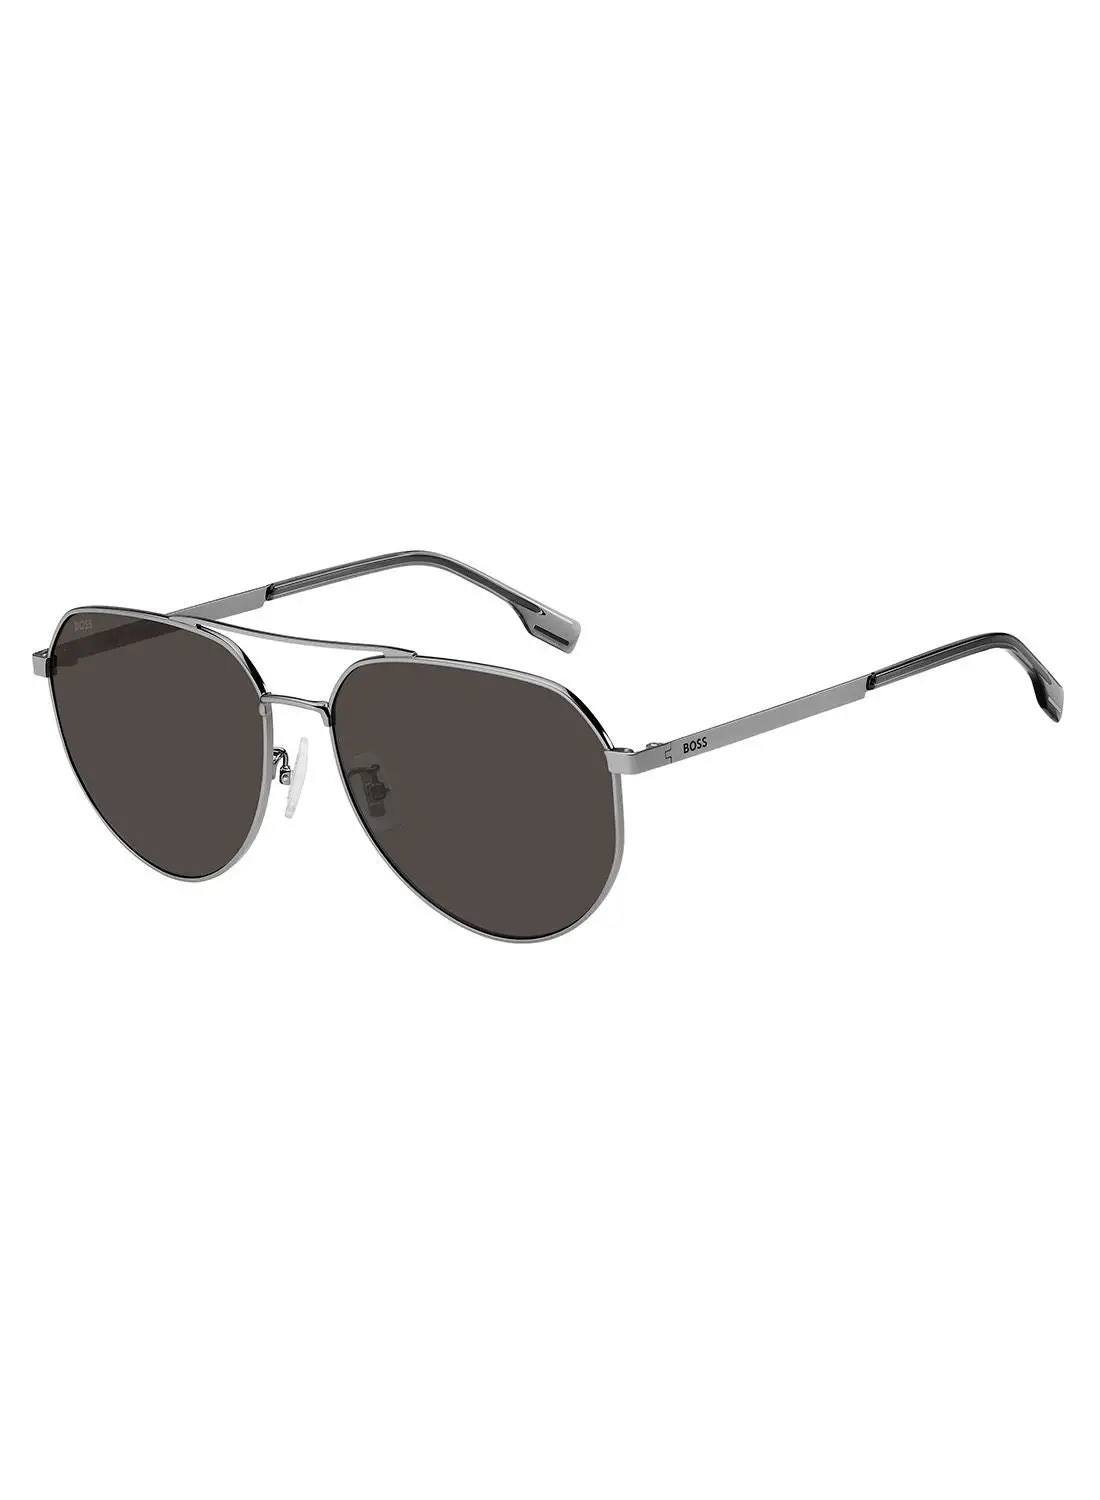 HUGO BOSS Men's UV Protection Pilot Sunglasses - Boss 1473/F/Sk Ruthenium 61 - Lens Size: 61 Mm